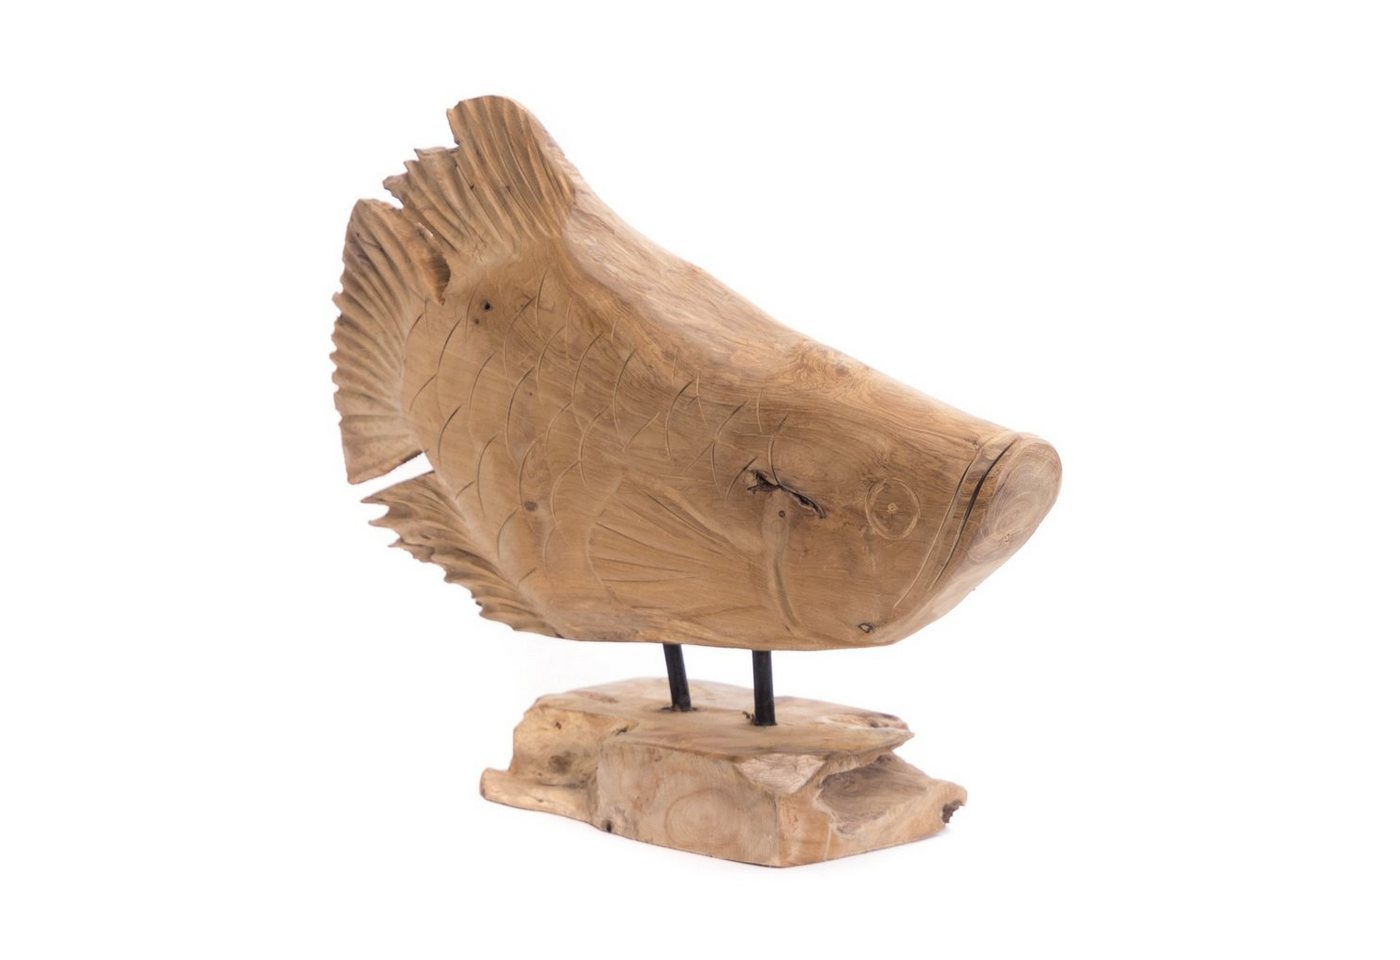 CREEDWOOD Skulptur FISCH SKULPTUR ROOT FISH", 55 cm, Teak, Wurzelholz Figur" von CREEDWOOD